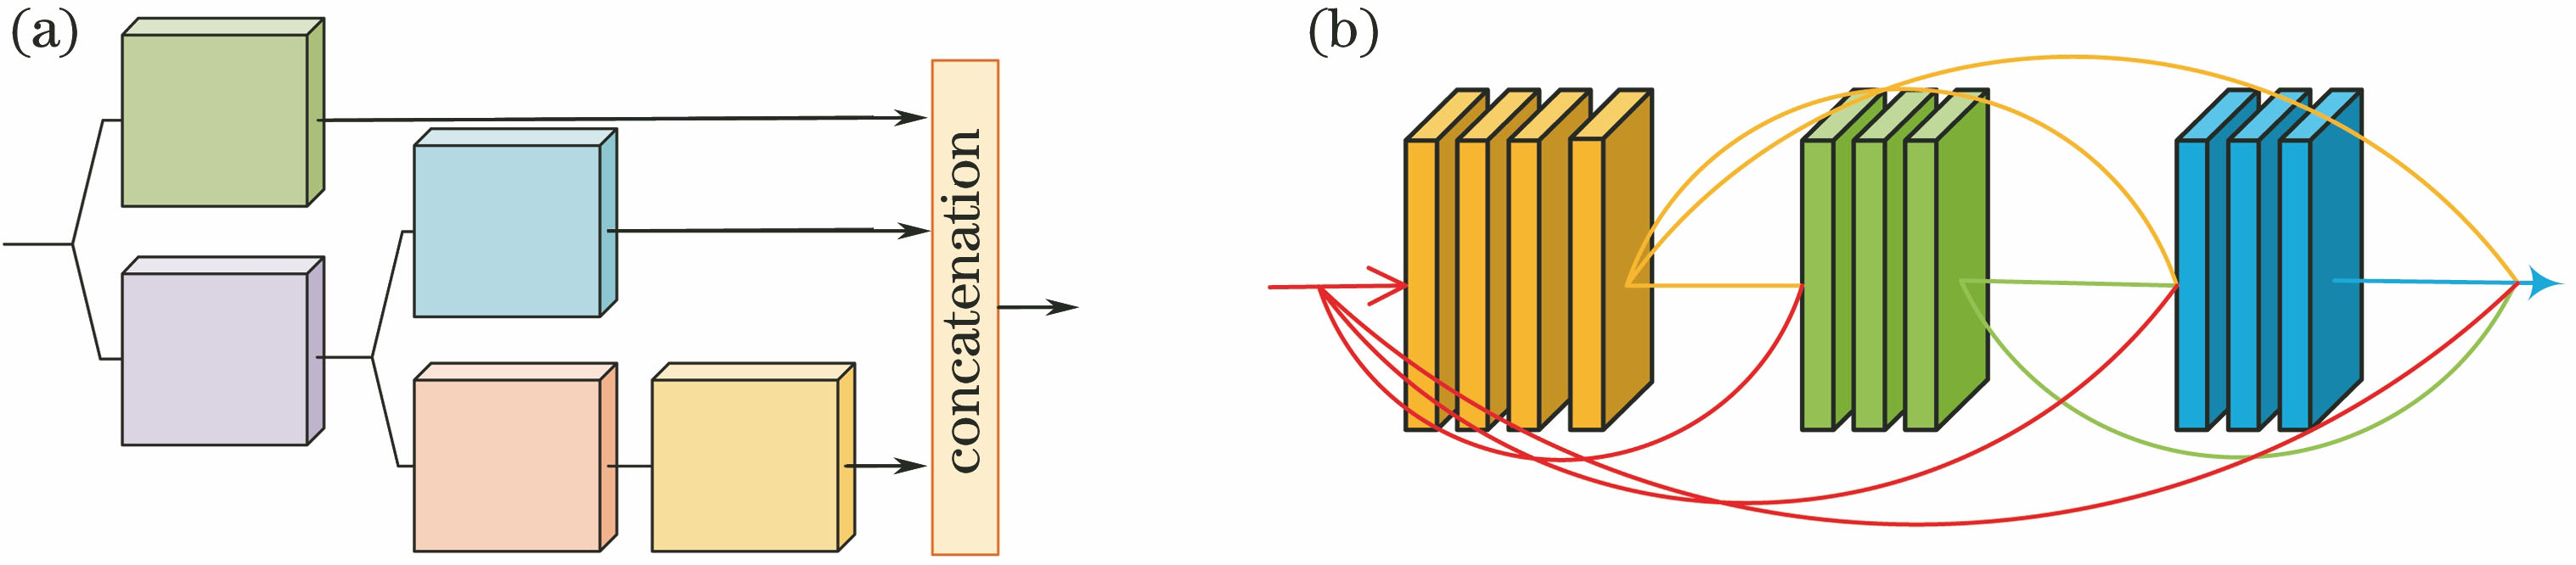 Context extraction module. (a)Stacked model; (b) context-sensitive module